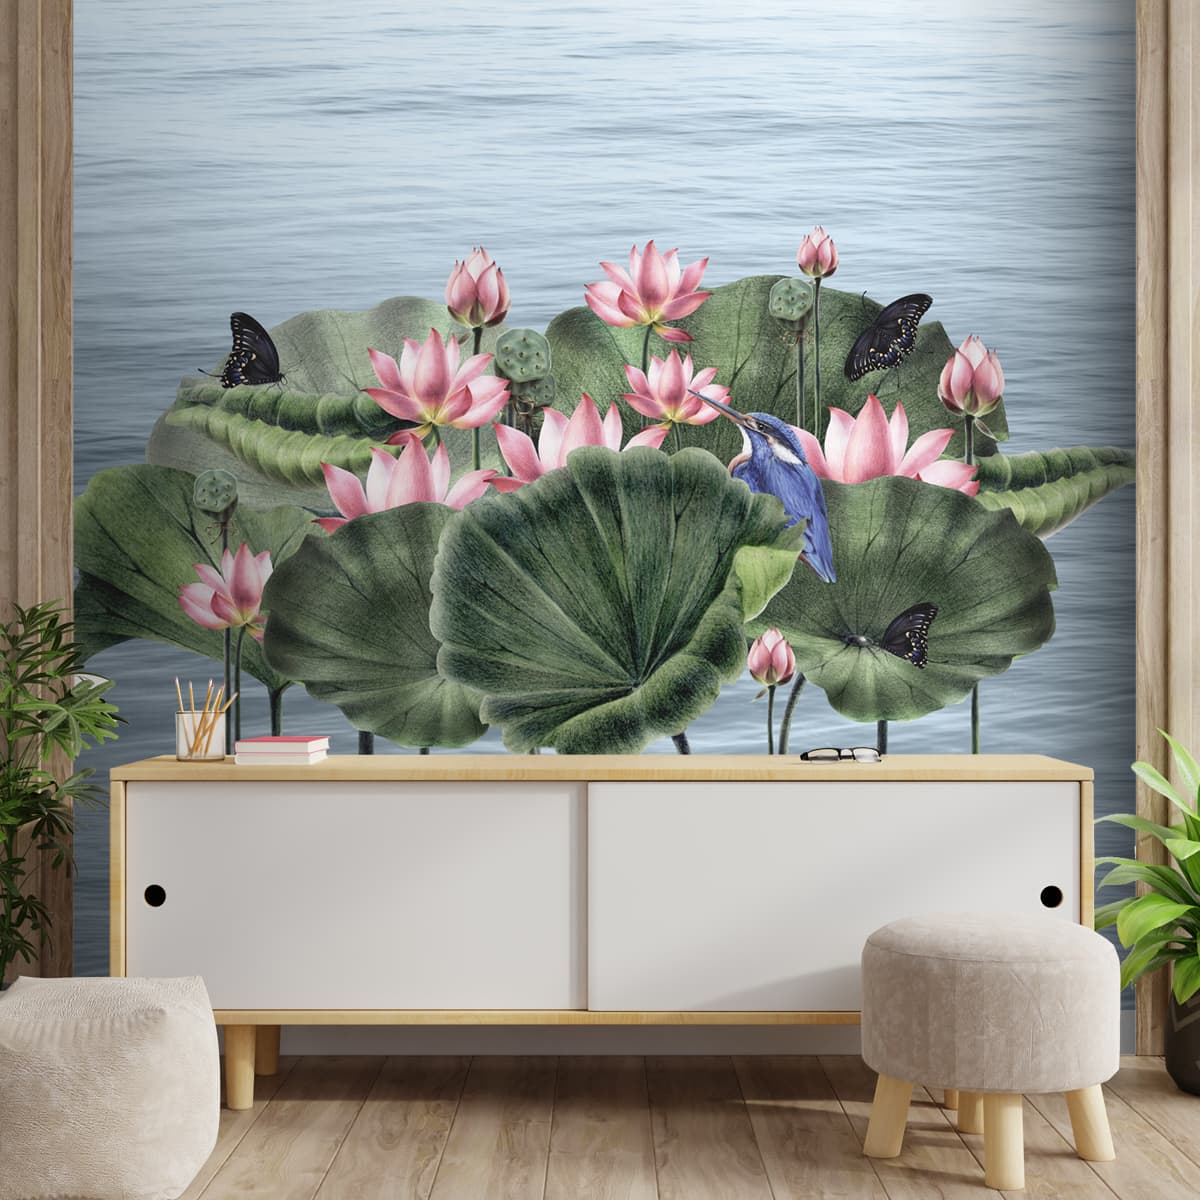 Padma, A Beautiful Lotuses Wallpaper for Walls